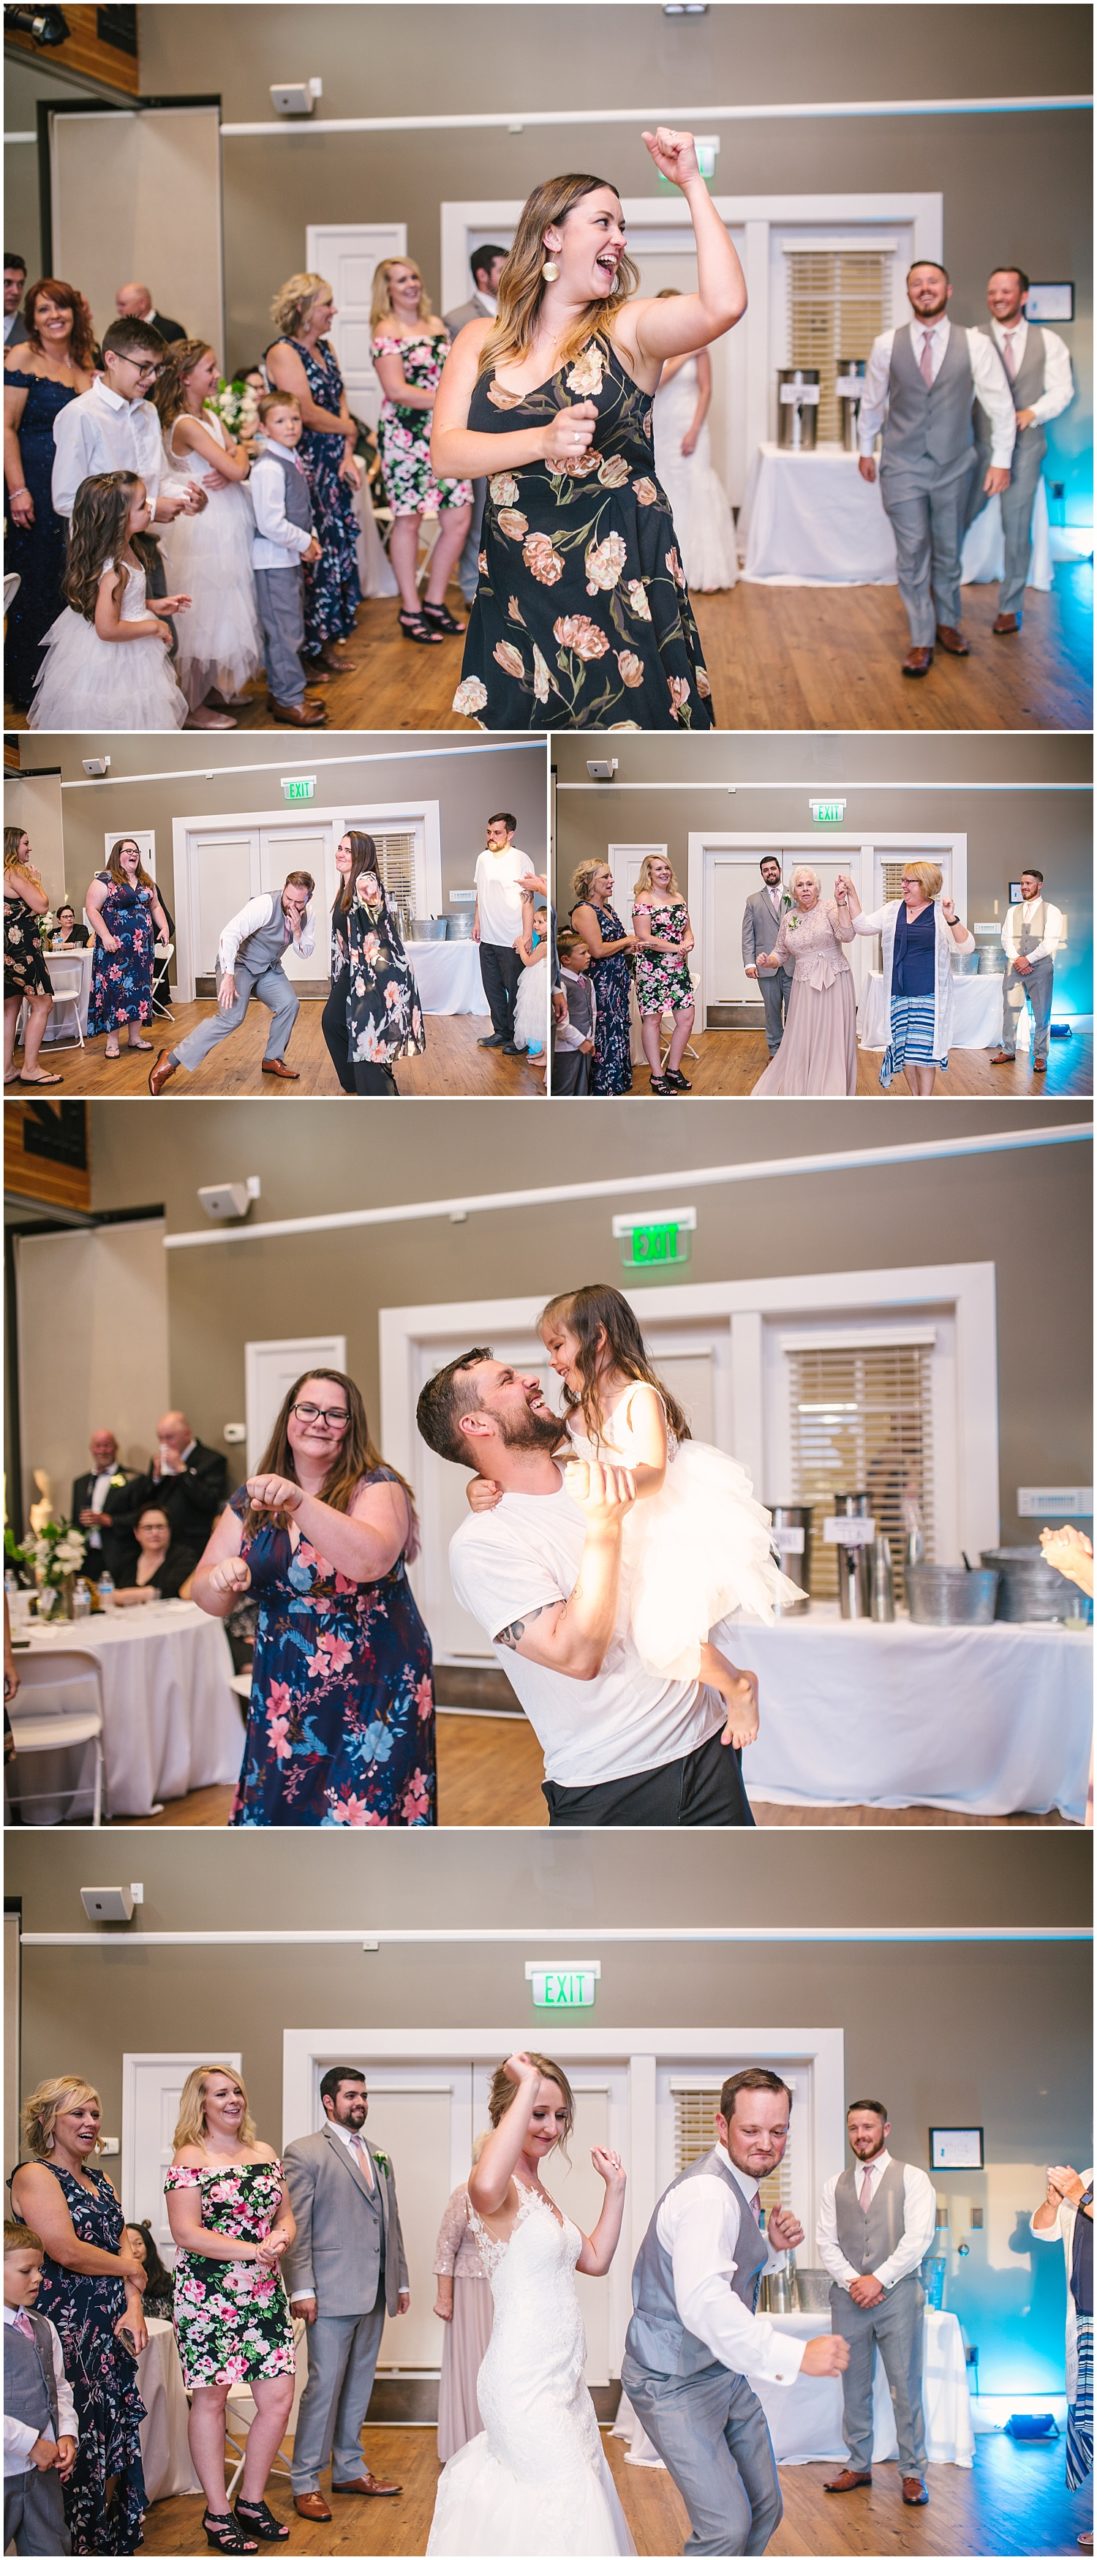 Cordera Community Center wedding reception in Colorado Springs